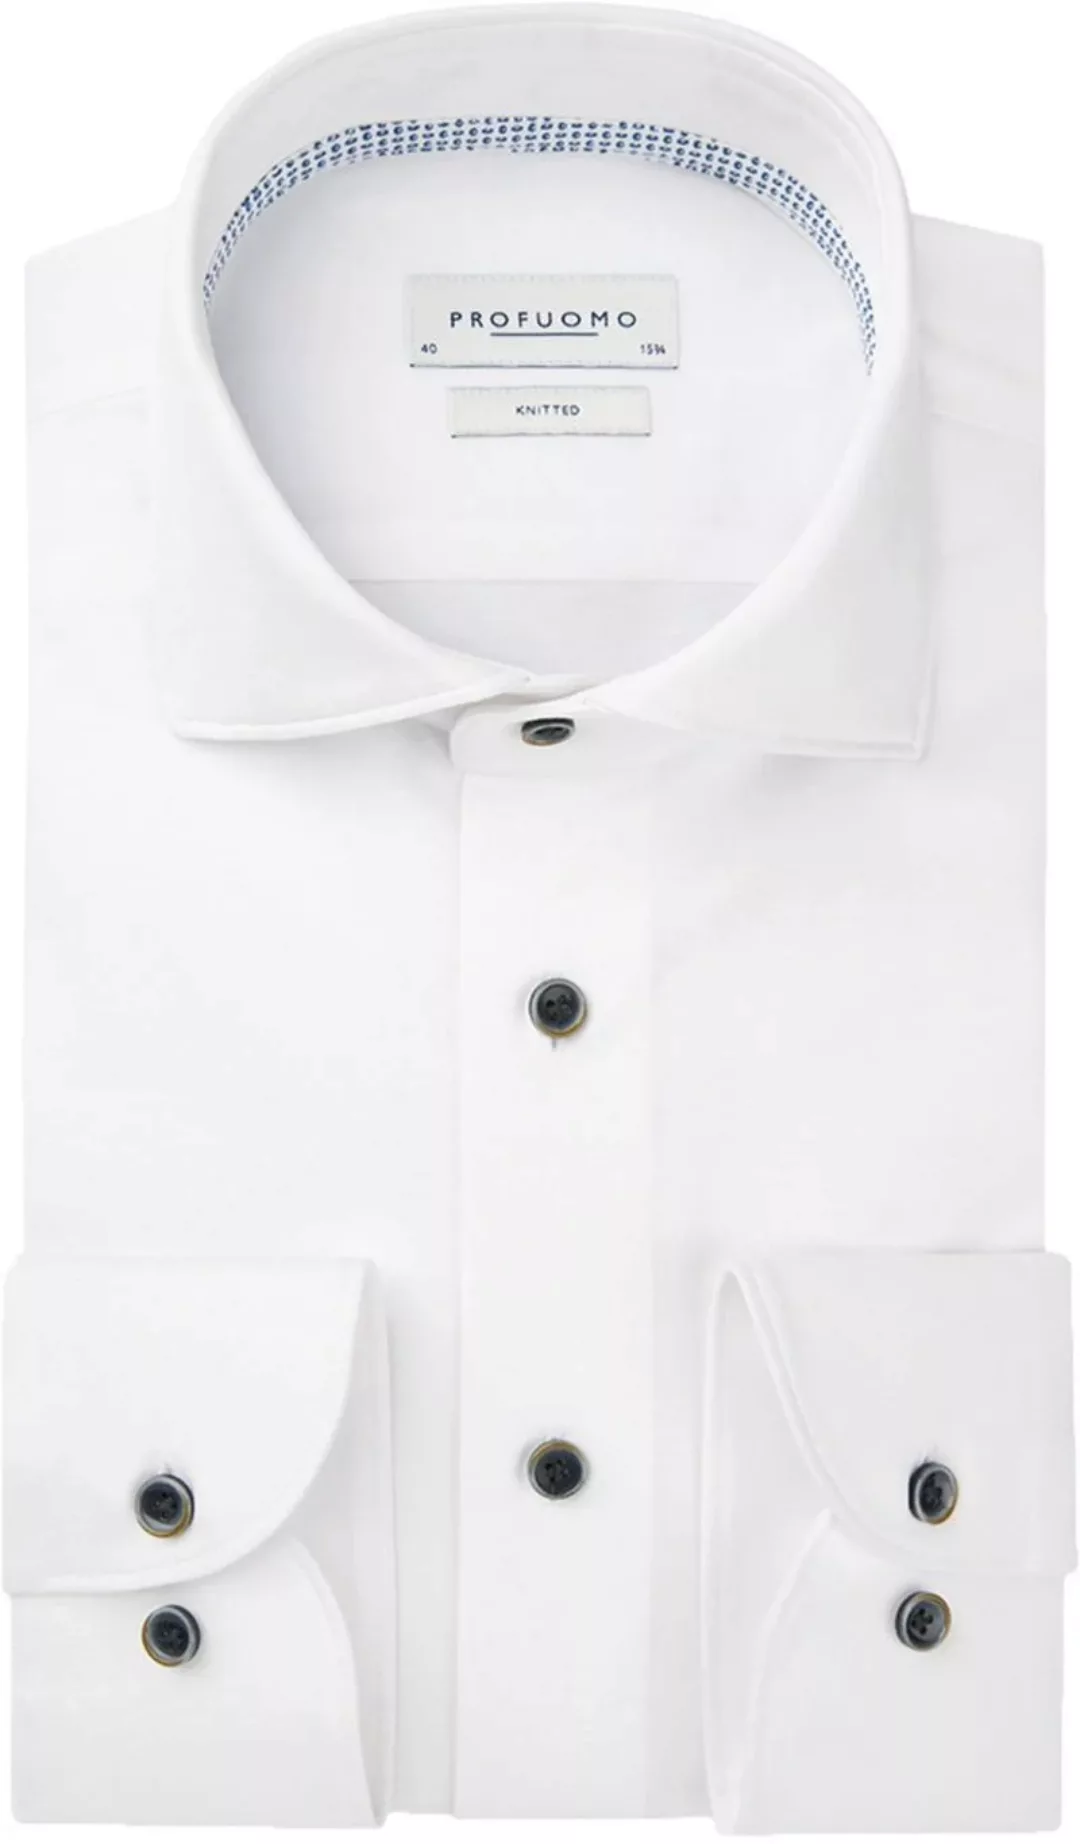 Profuomo Hemd Knitted Weiß - Größe 44 günstig online kaufen